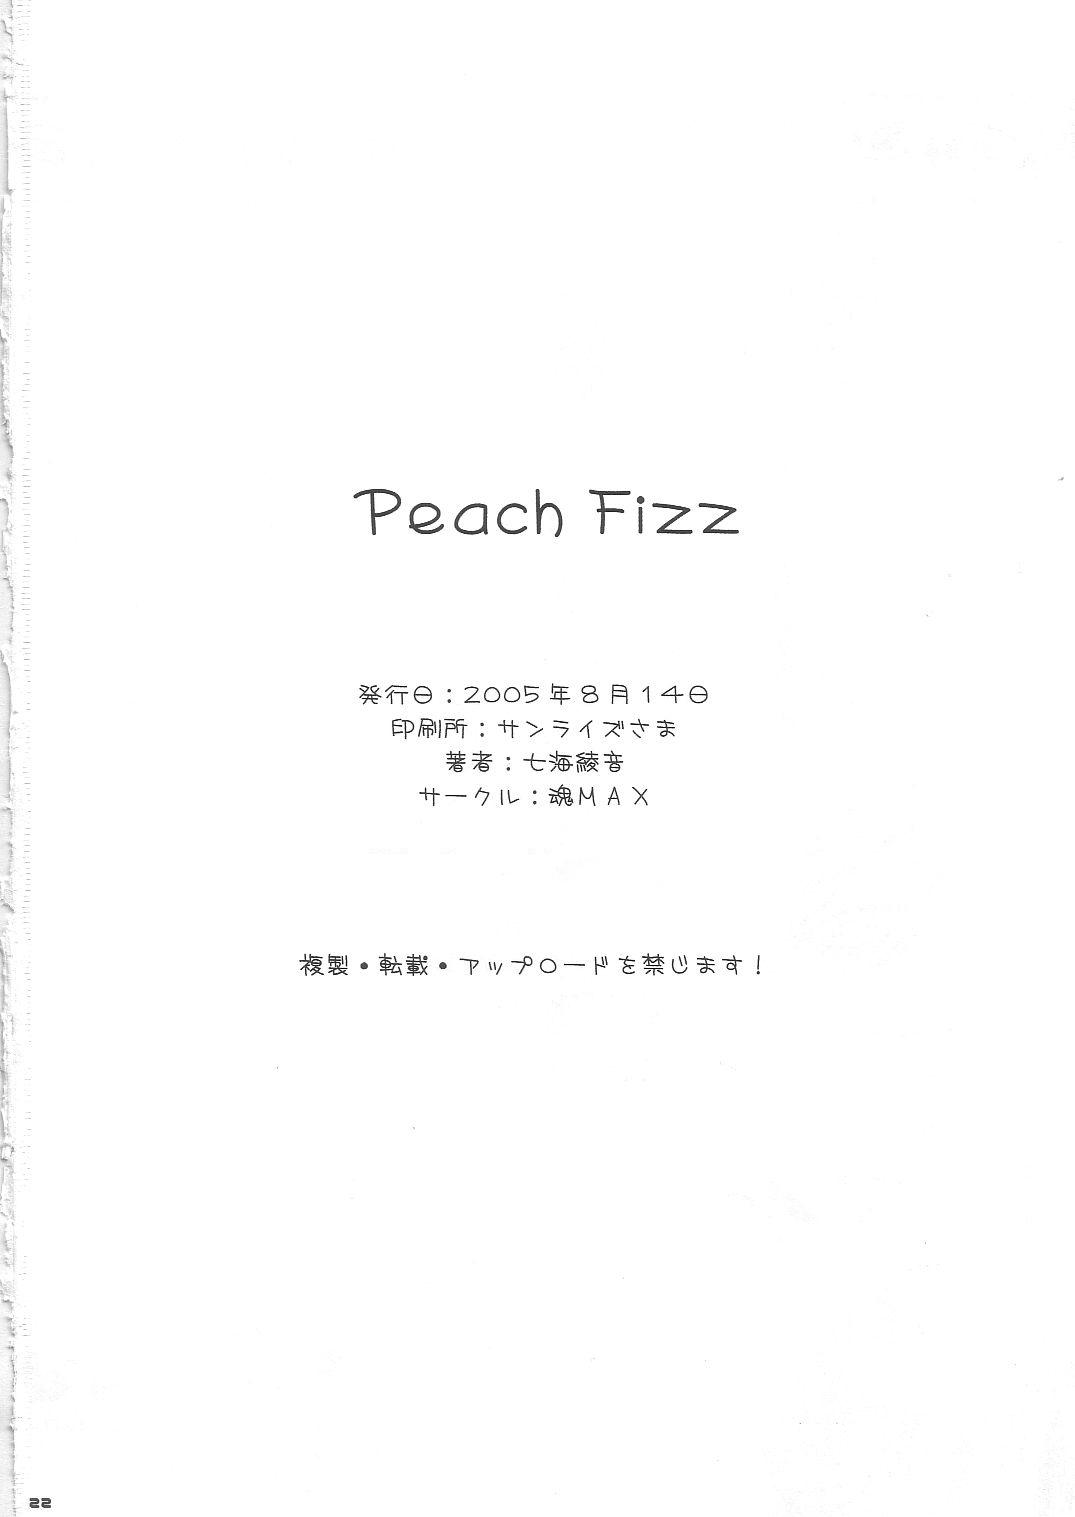 Peach Fizz 20